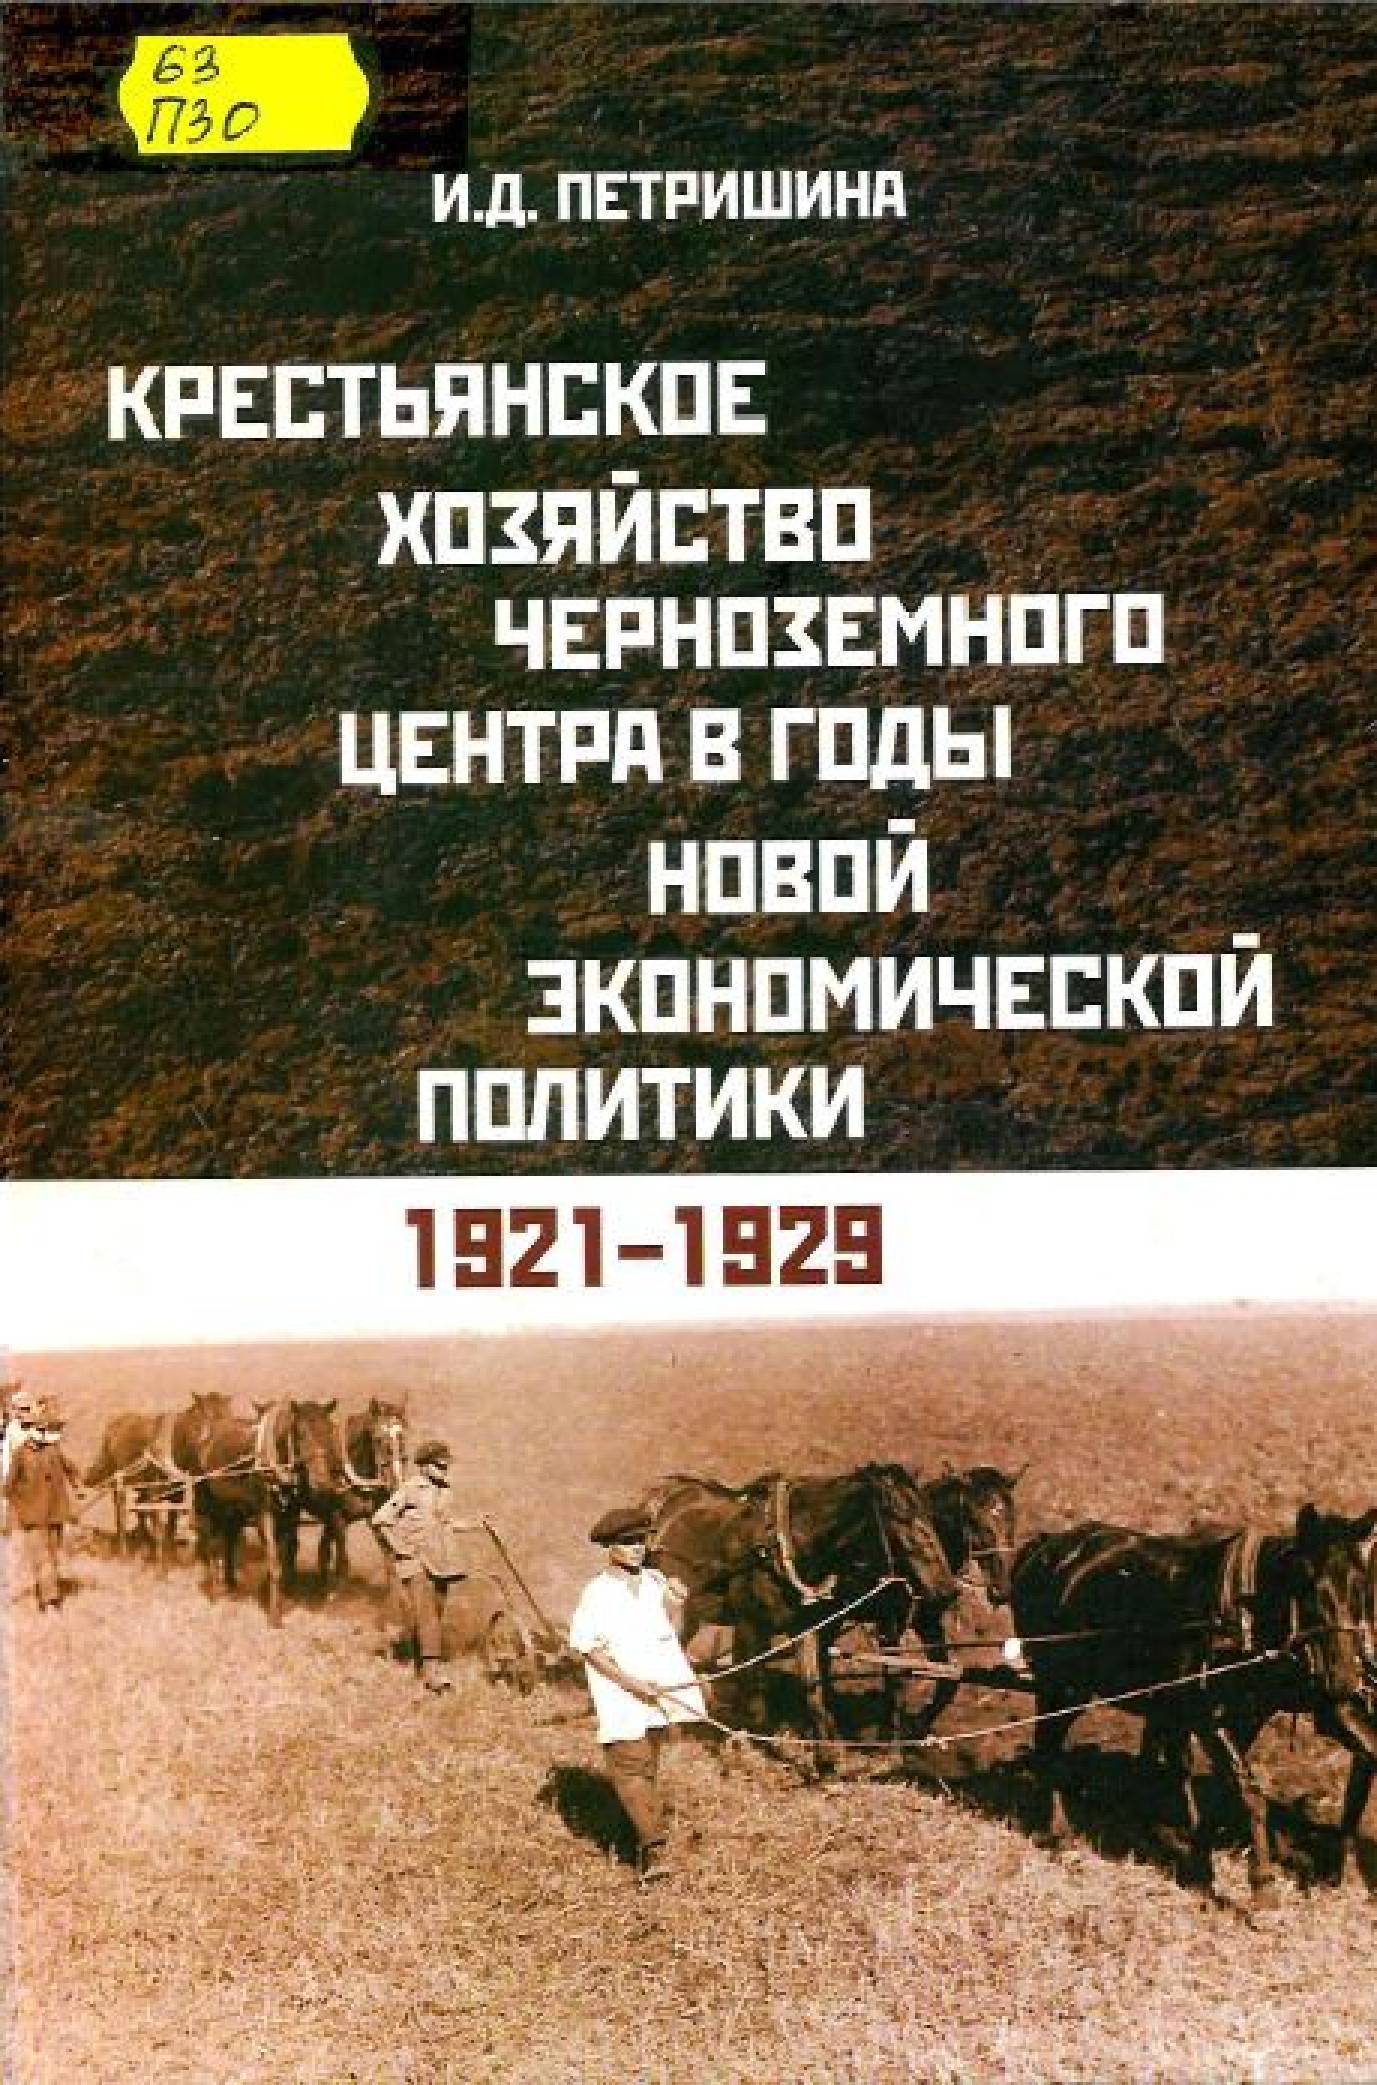 Петришина, И. Д. Крестьянское хозяйство Черноземного центра в годы новой экономической политики, 1921-1929 гг.